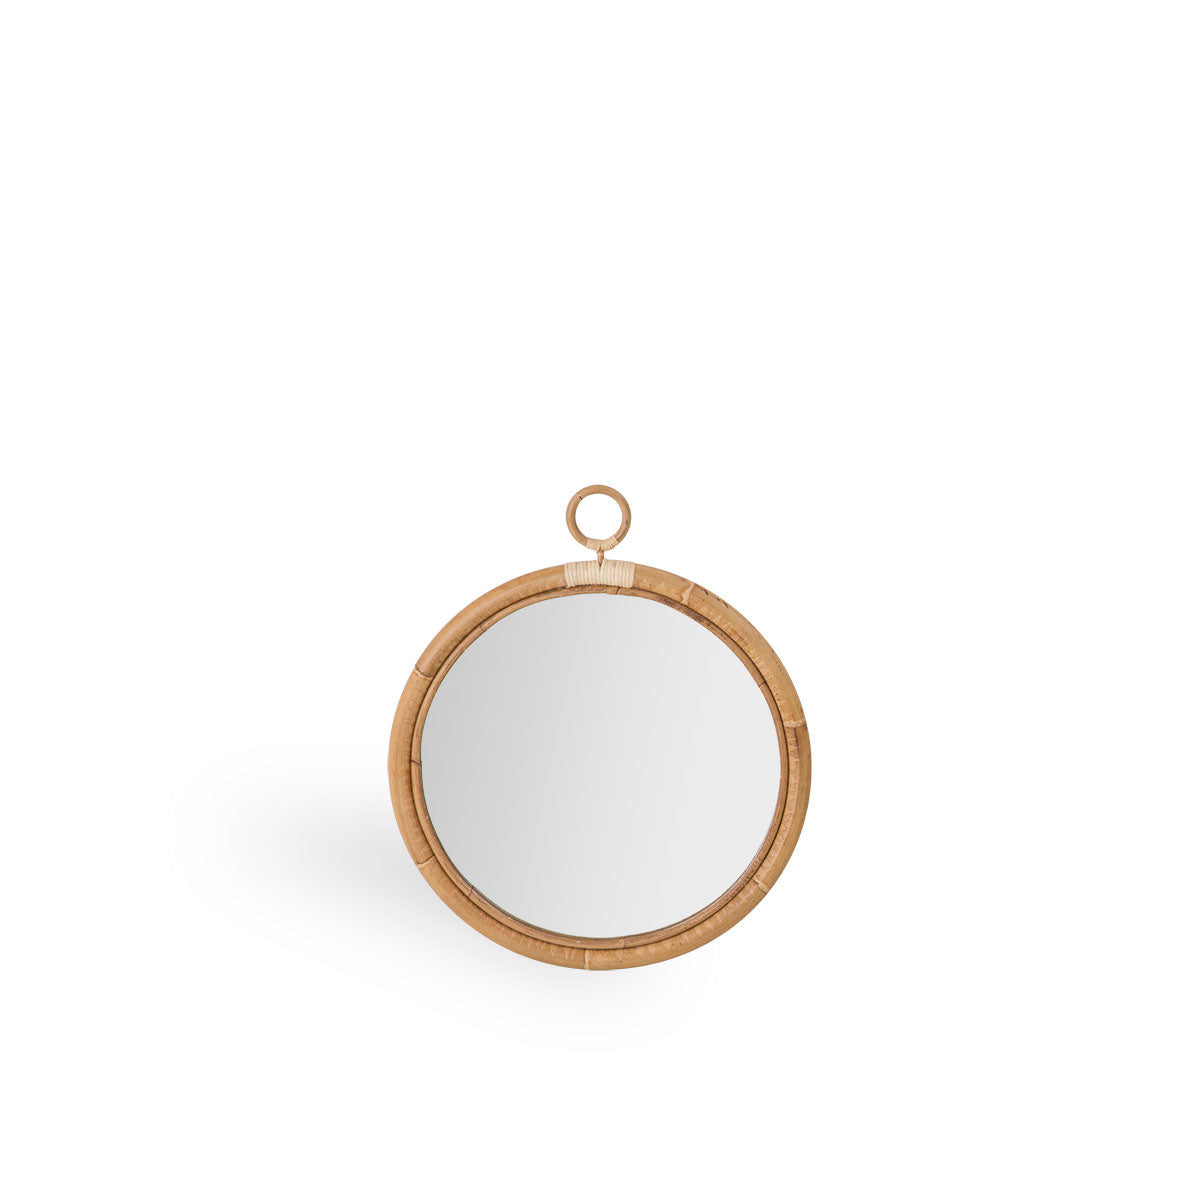 Rattan Round Mirror - Small